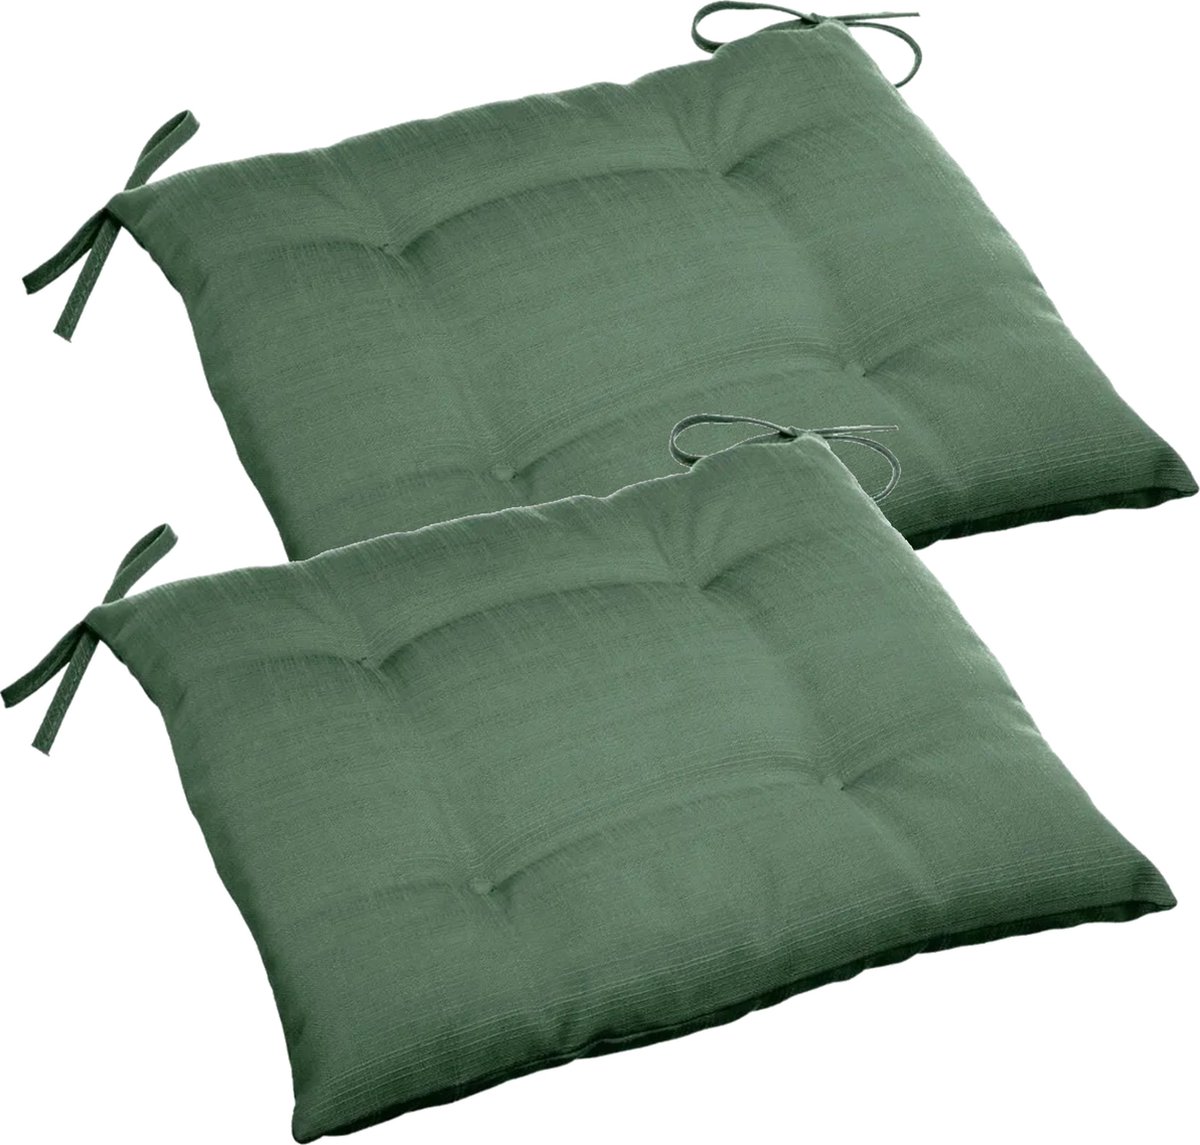 Set van 6x stuks stoelkussens voor binnen en buiten/tuin stoelen in de kleur olijf groen 40 x 40 x 4 cm - Water en UV bestendig